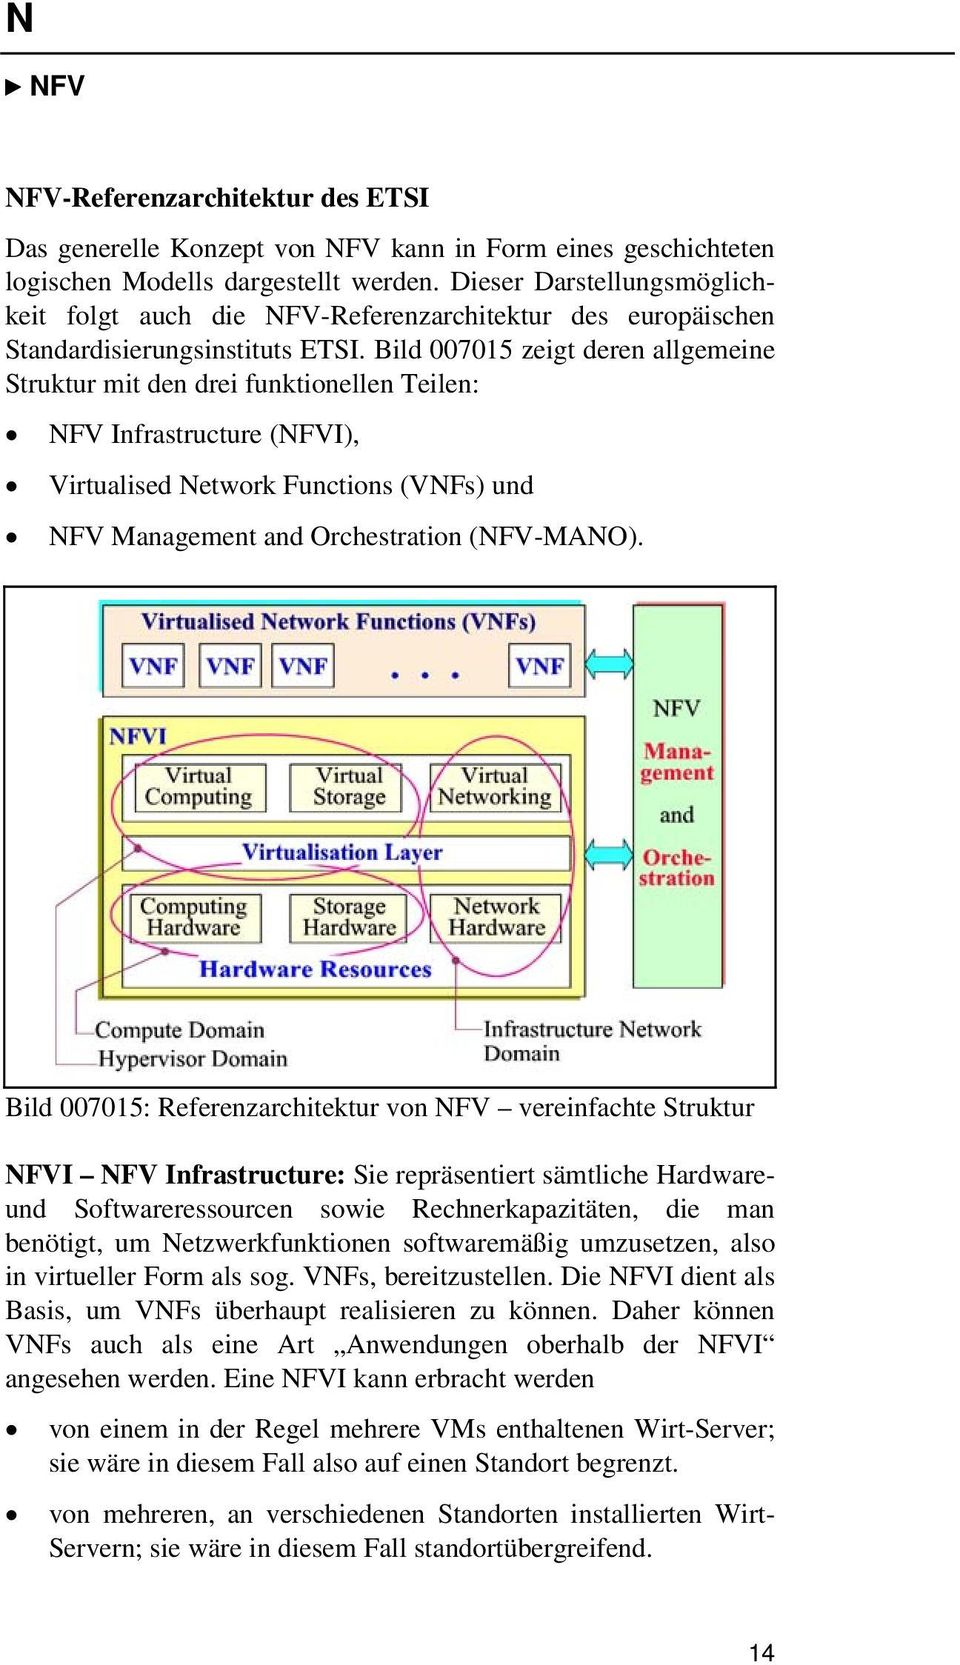 Bild 007015 zeigt deren allgemeine Struktur mit den drei funktionellen Teilen: NFV Infrastructure (NFVI), Virtualised Network Functions (VNFs) und NFV Management and Orchestration (NFV-MANO).